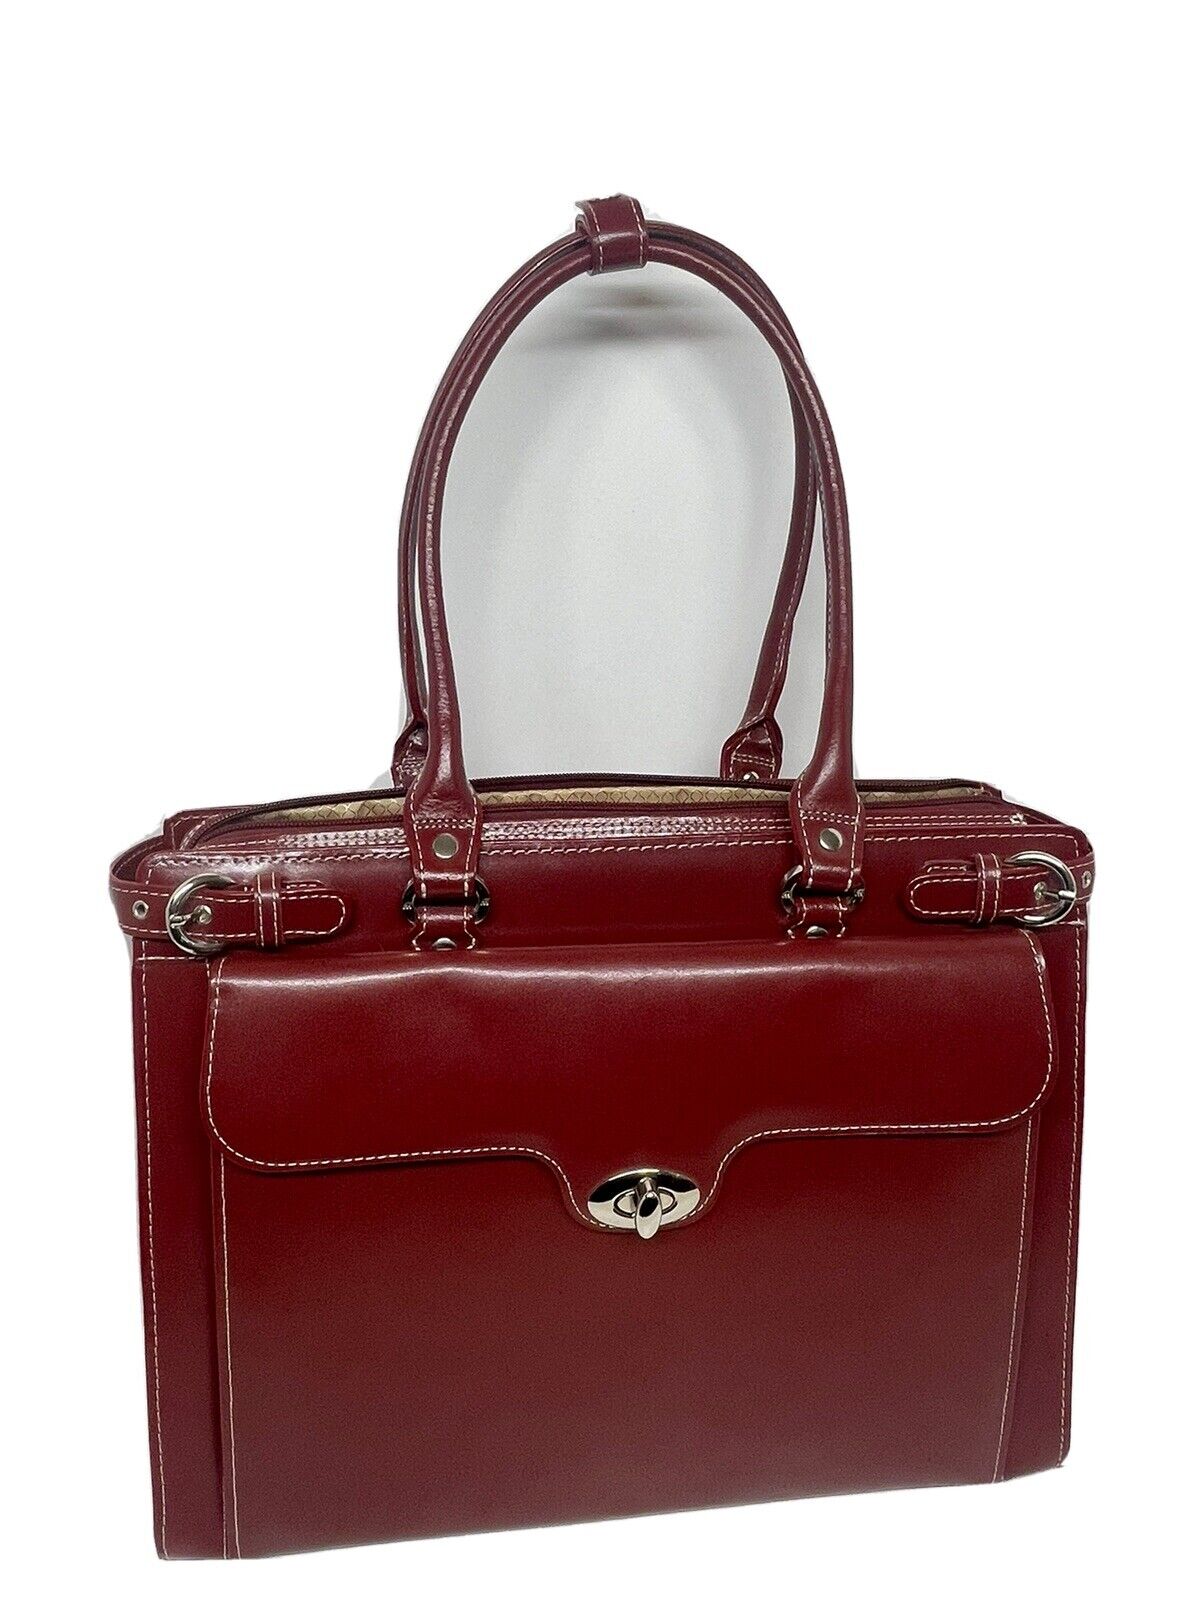 McKlein W Series Laptop Briefcase Red Leather (94836)